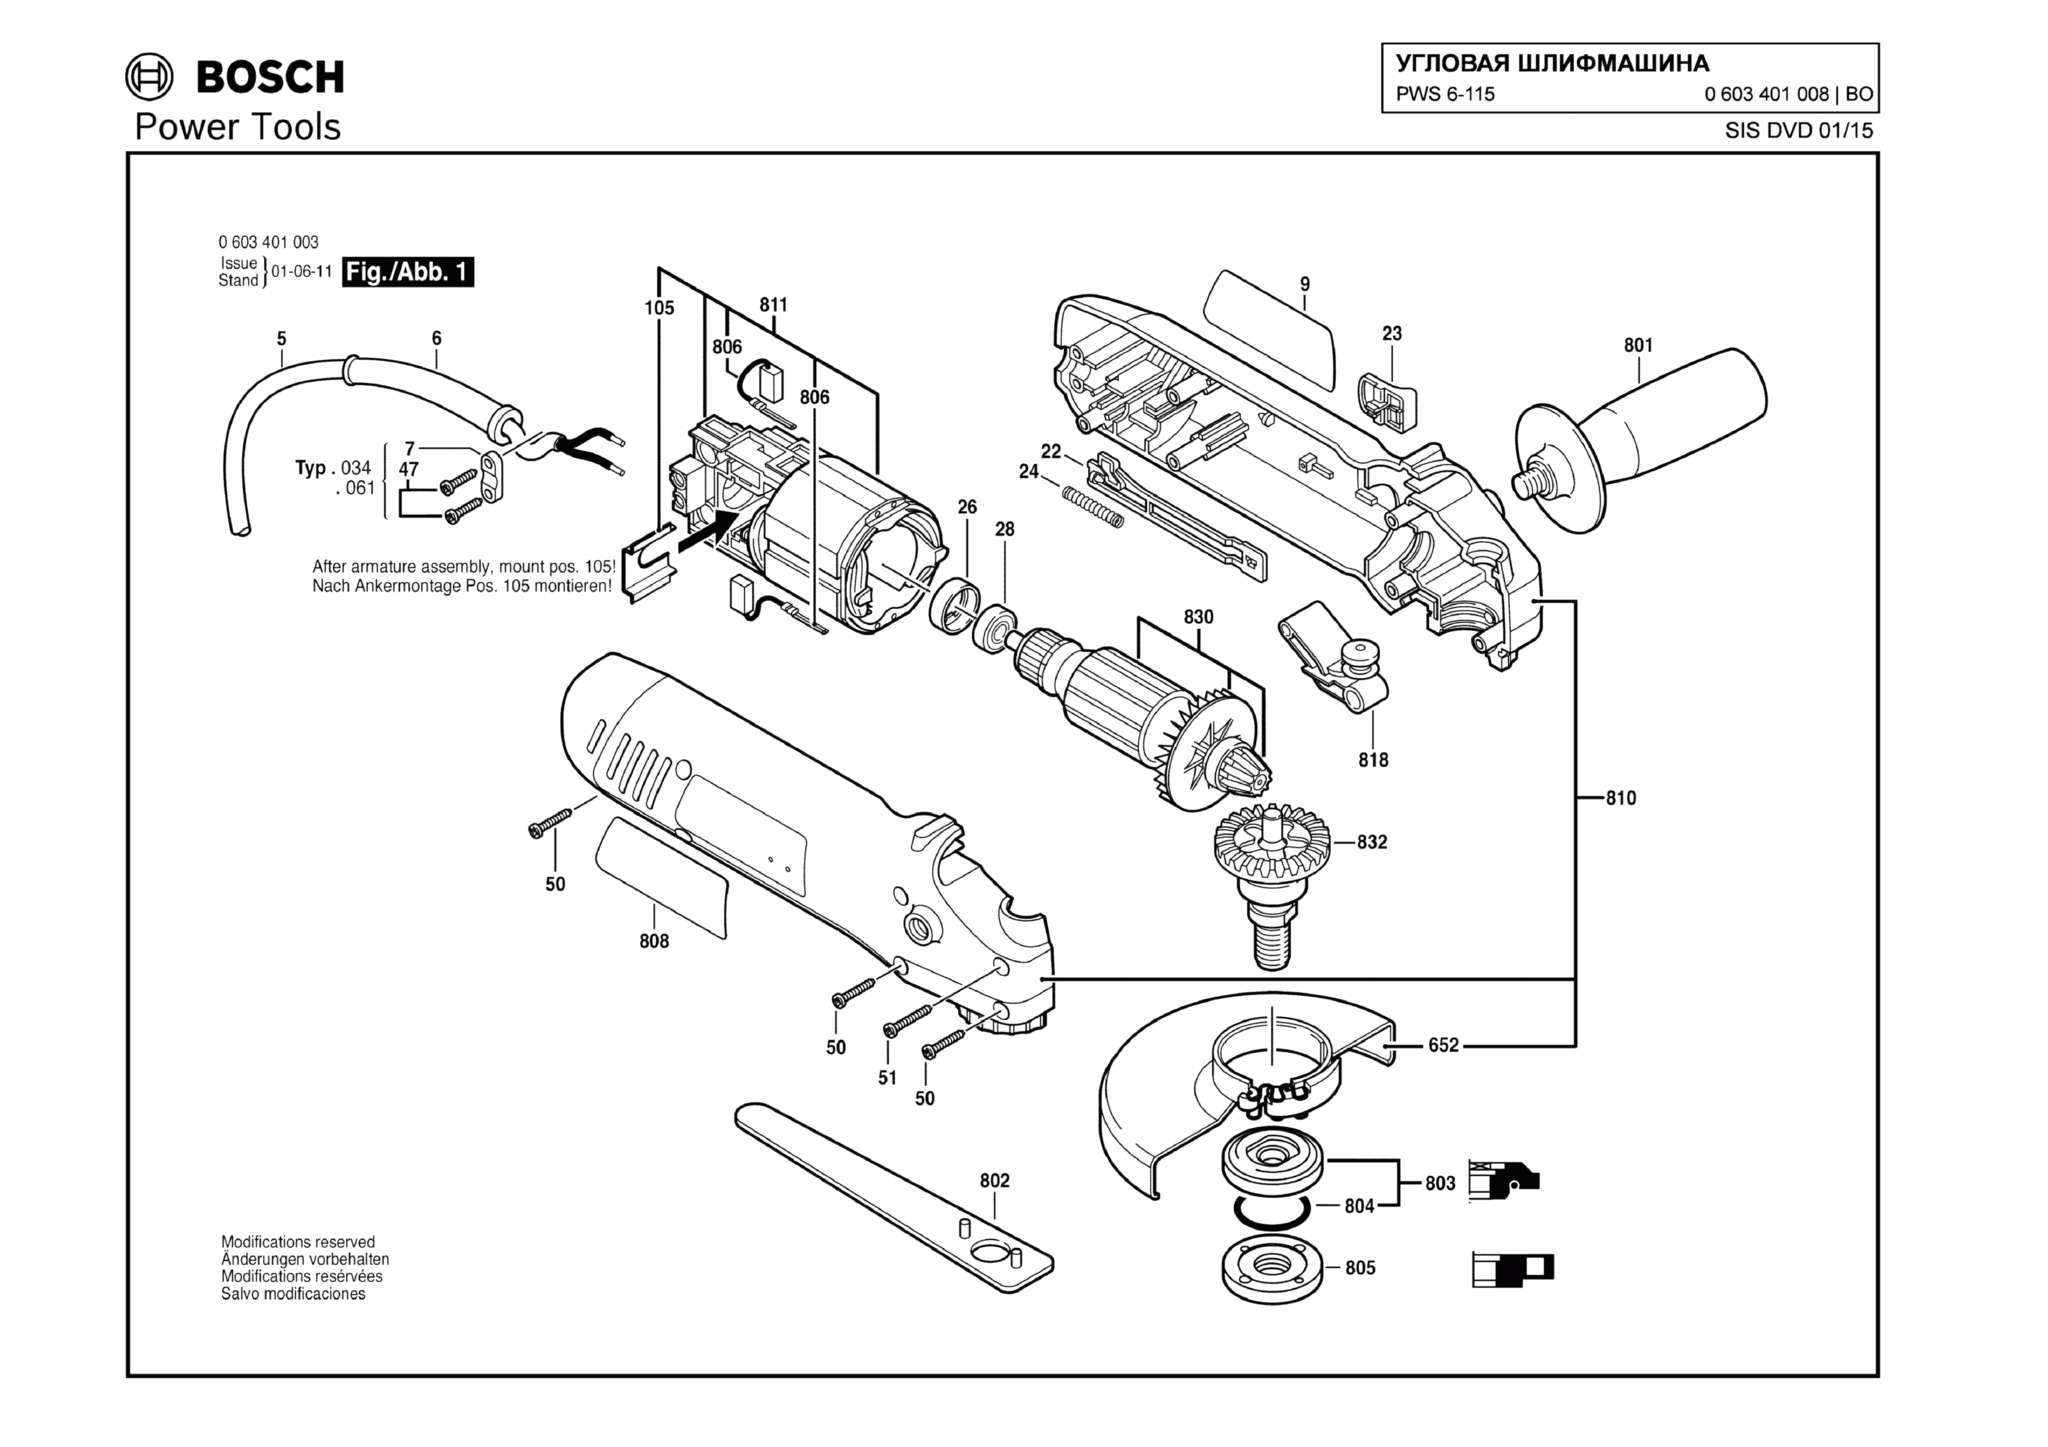 Запчасти, схема и деталировка Bosch PWS 6-115 (ТИП 0603401008)